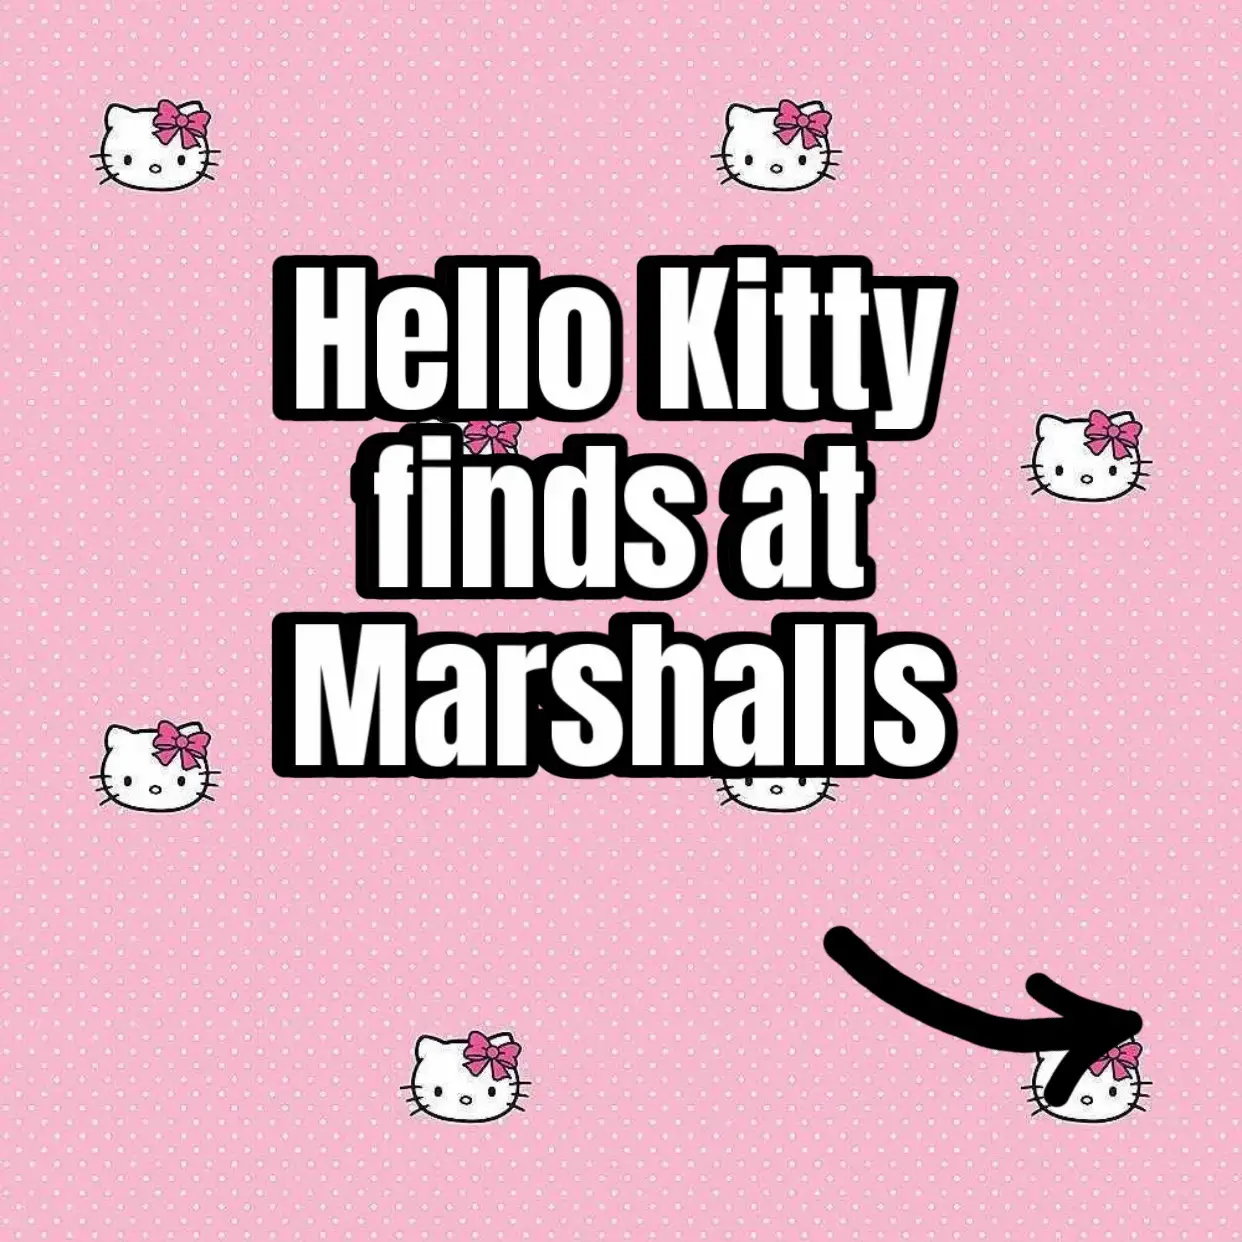 marshals hello kitty yoga matt｜TikTok Search